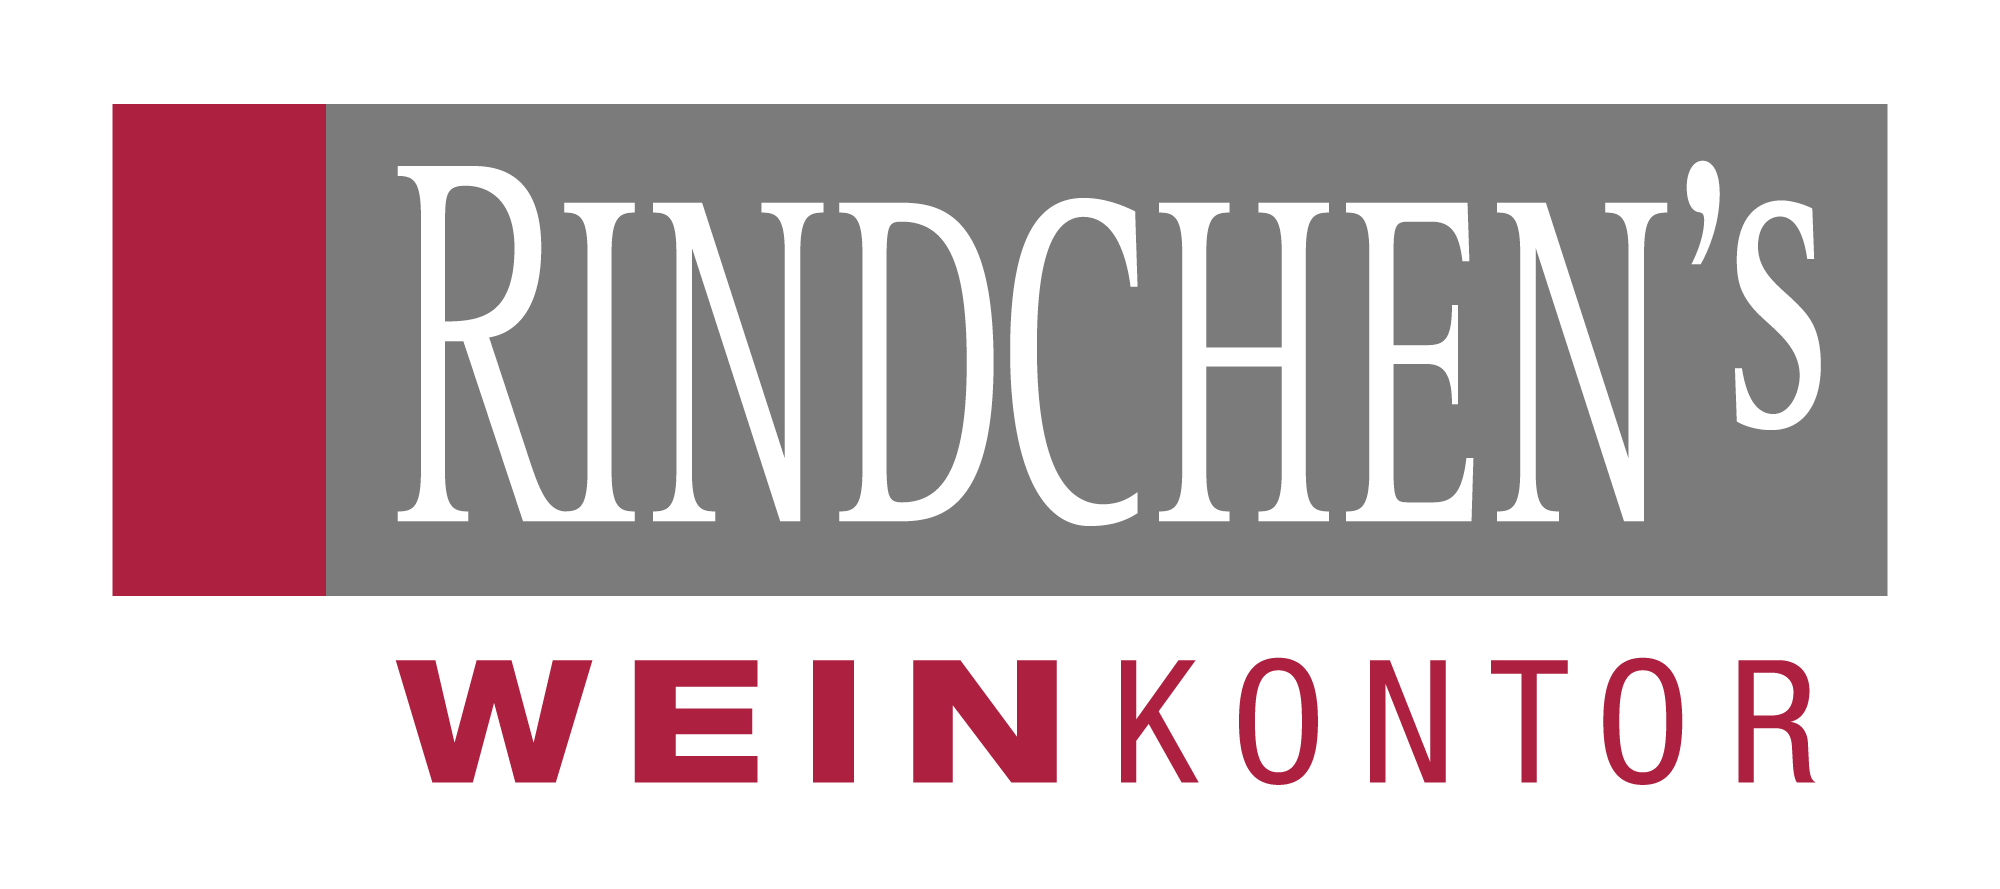 Rindchen-Logo-pos-CMYK2000px